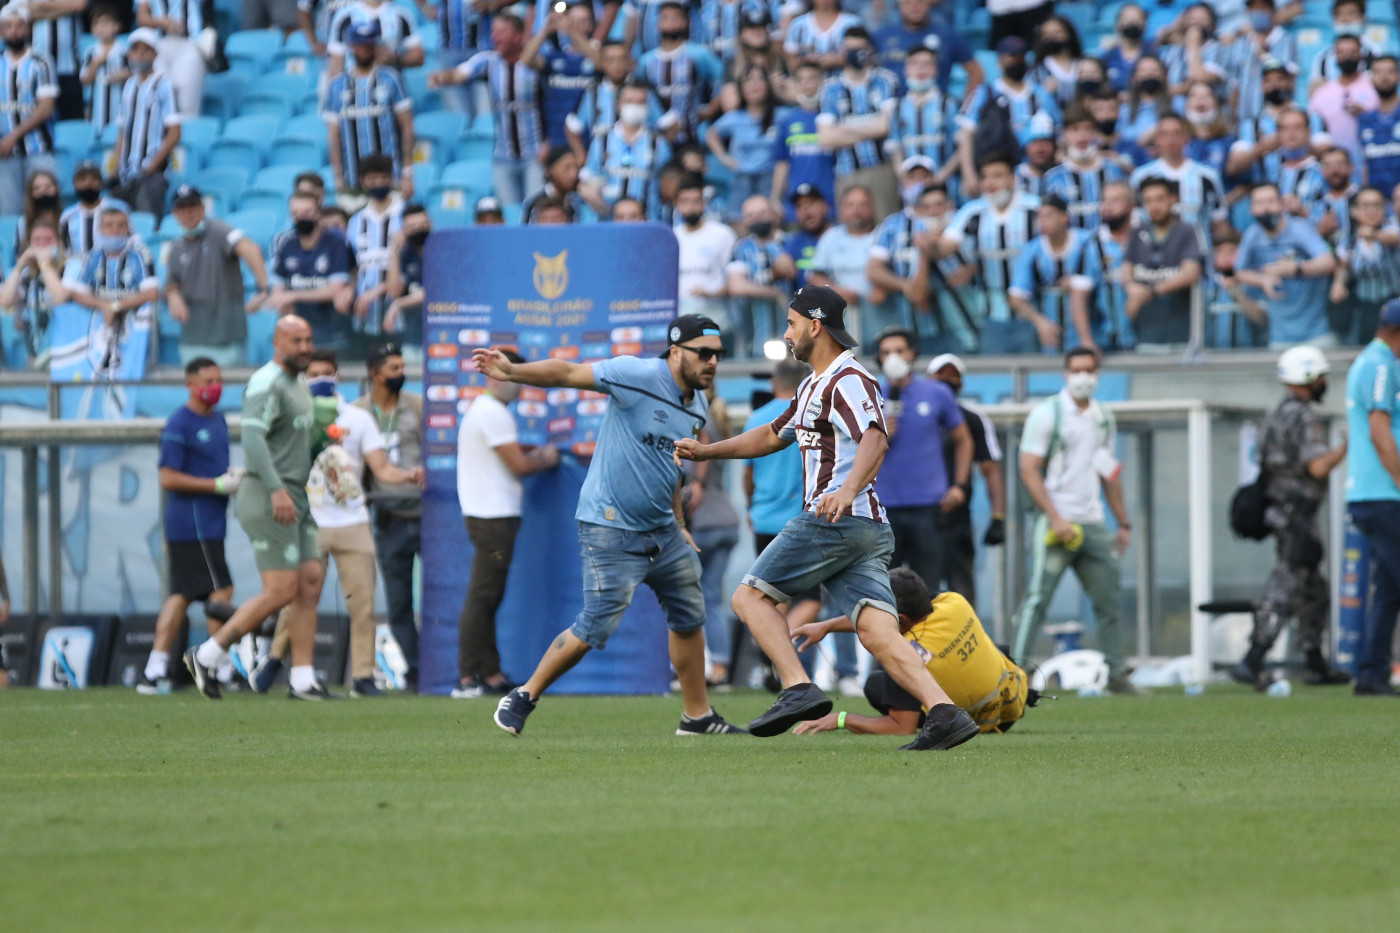 Torcedores do Grêmio invadindo o gramado do estádio após partida contra o Palmeiras